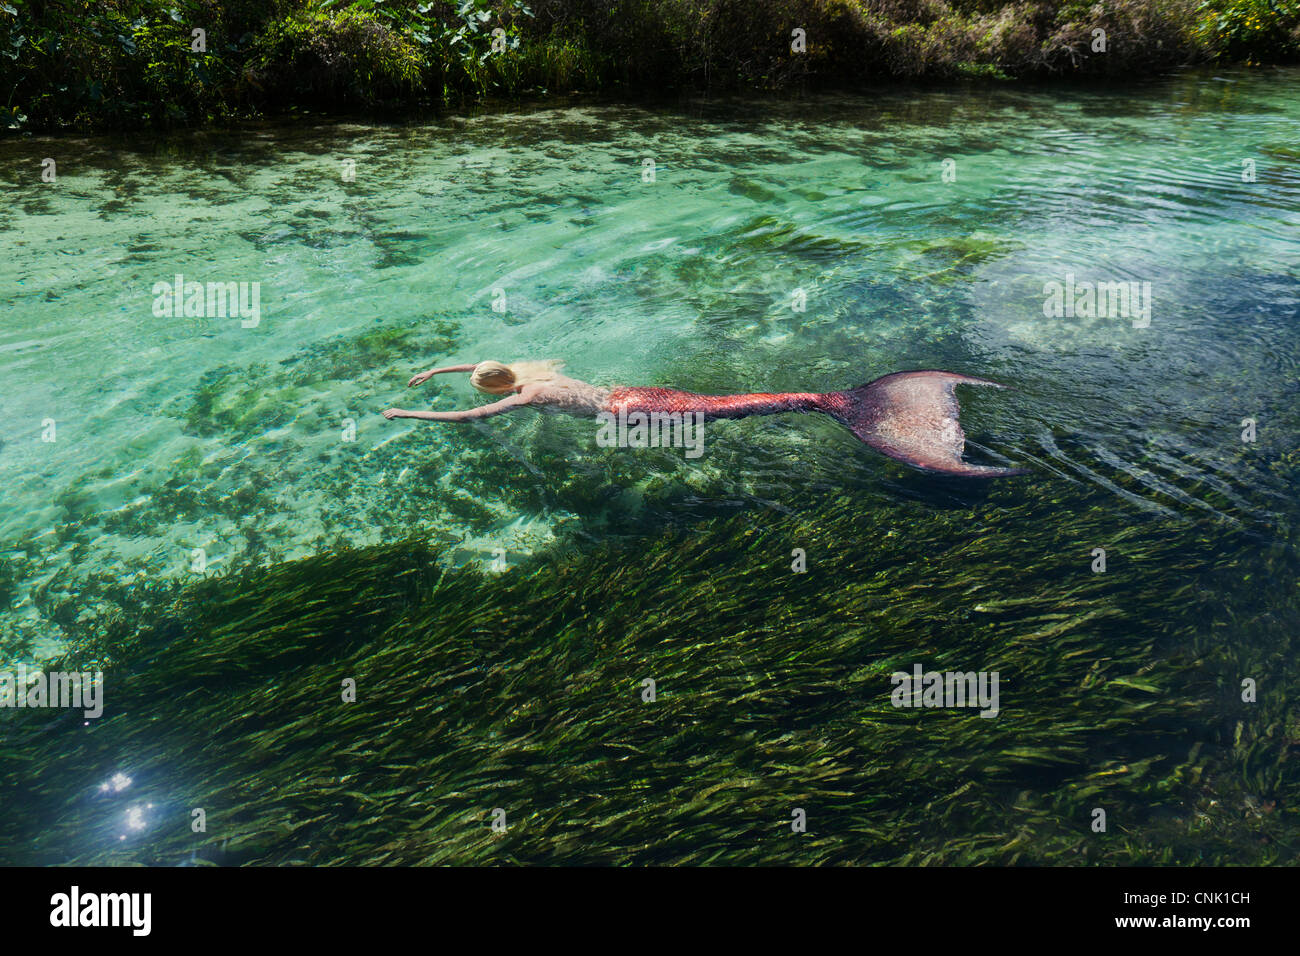 Sirène flottant sur son ventre au-dessus de zostères dans un Wachee river in Weeki Wachee Springs Florida Banque D'Images